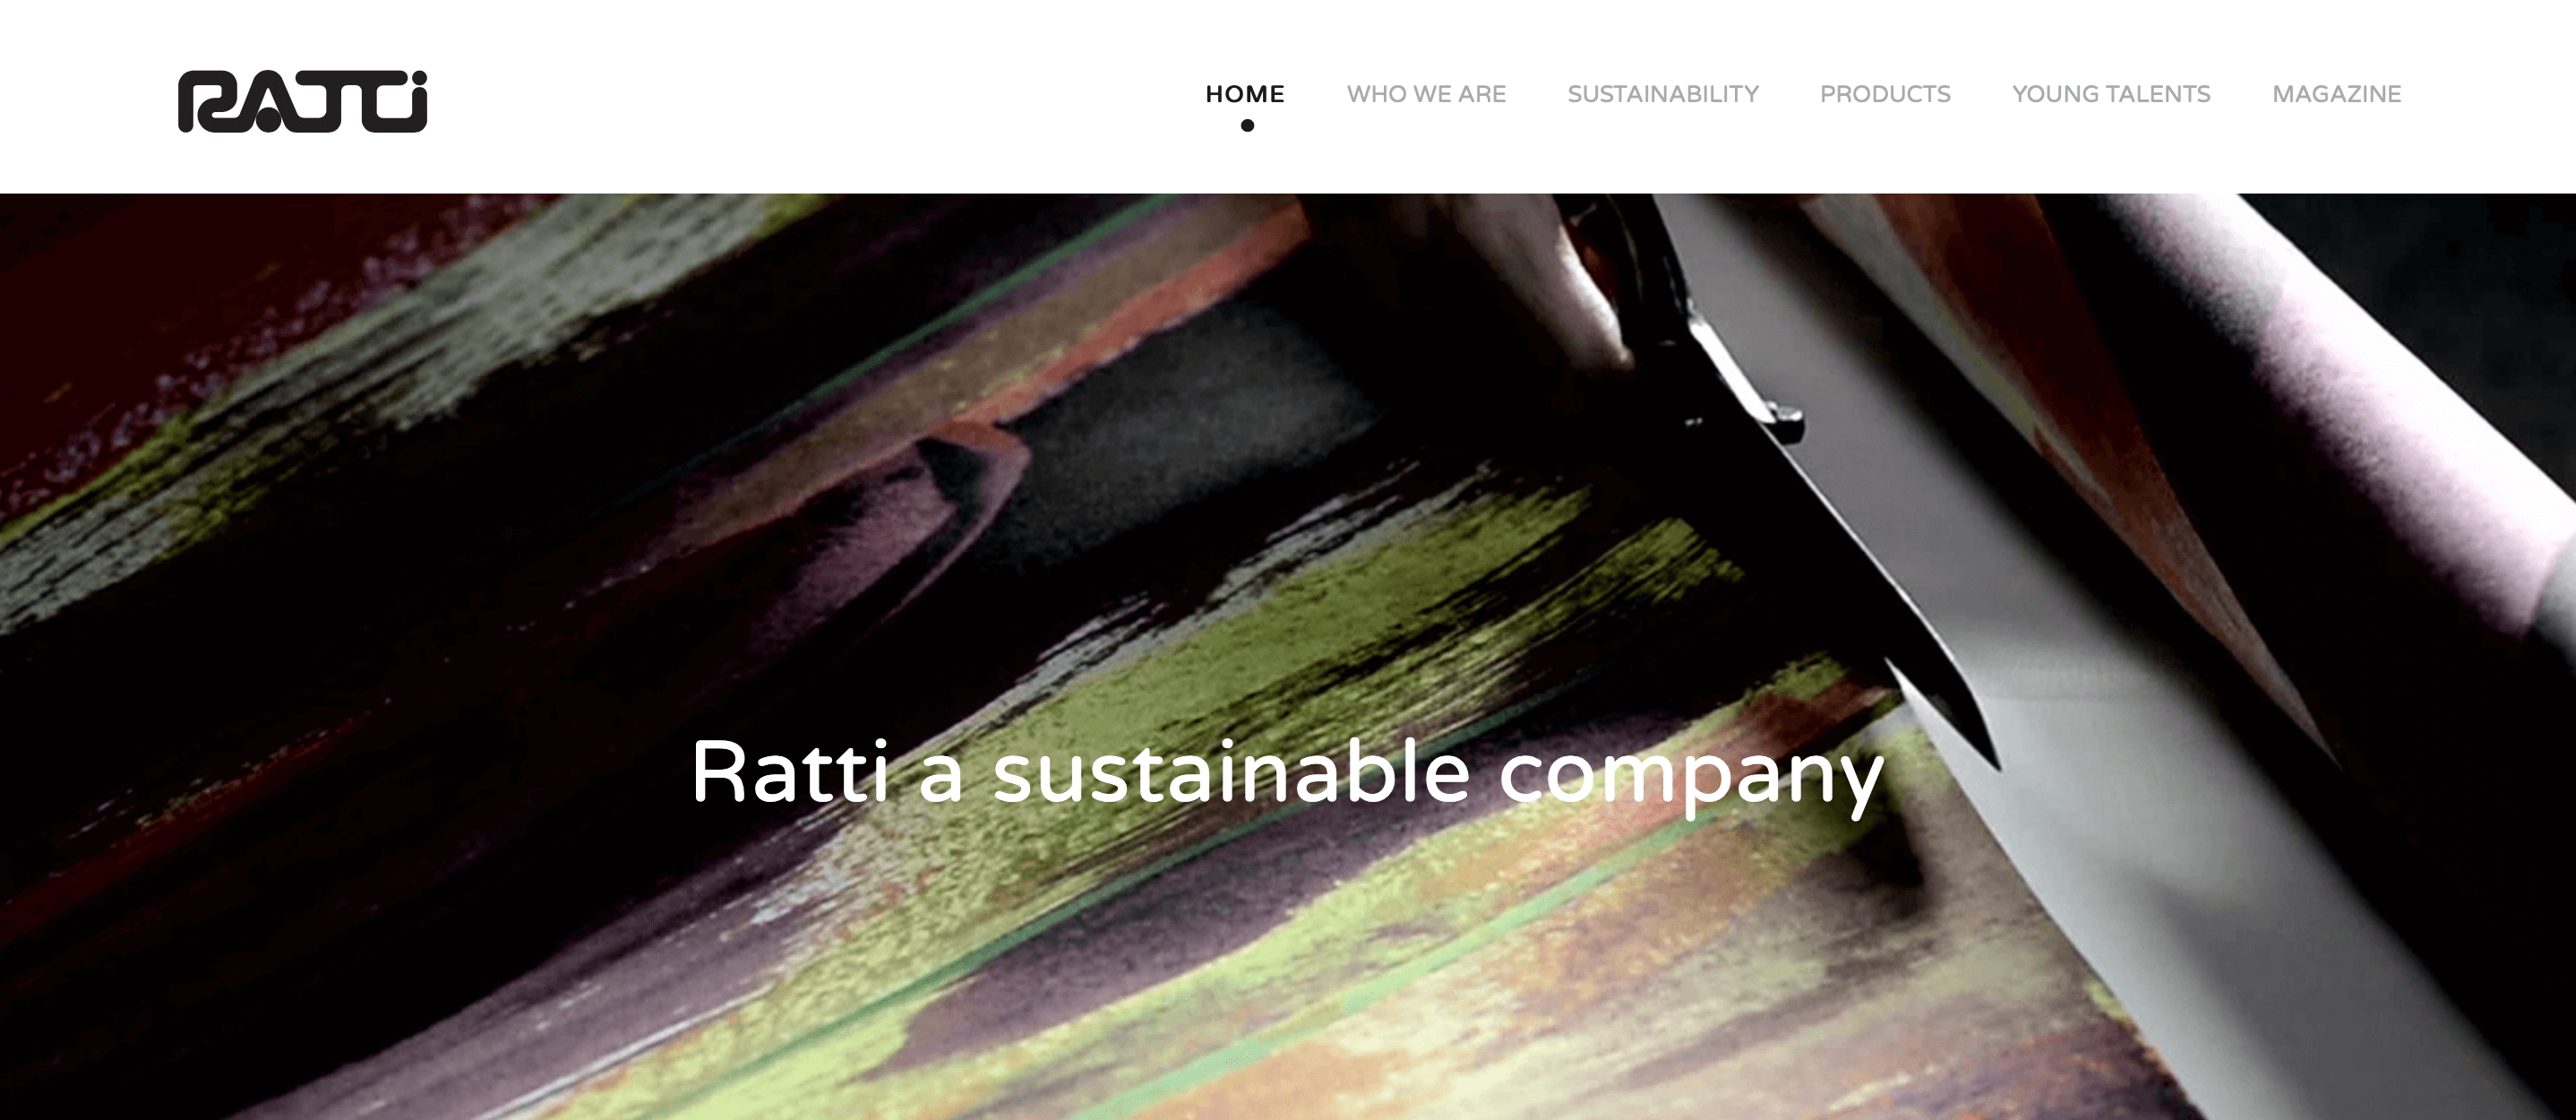 意大利纺织品制造商Ratti集团前九个月销售额达5150万欧元